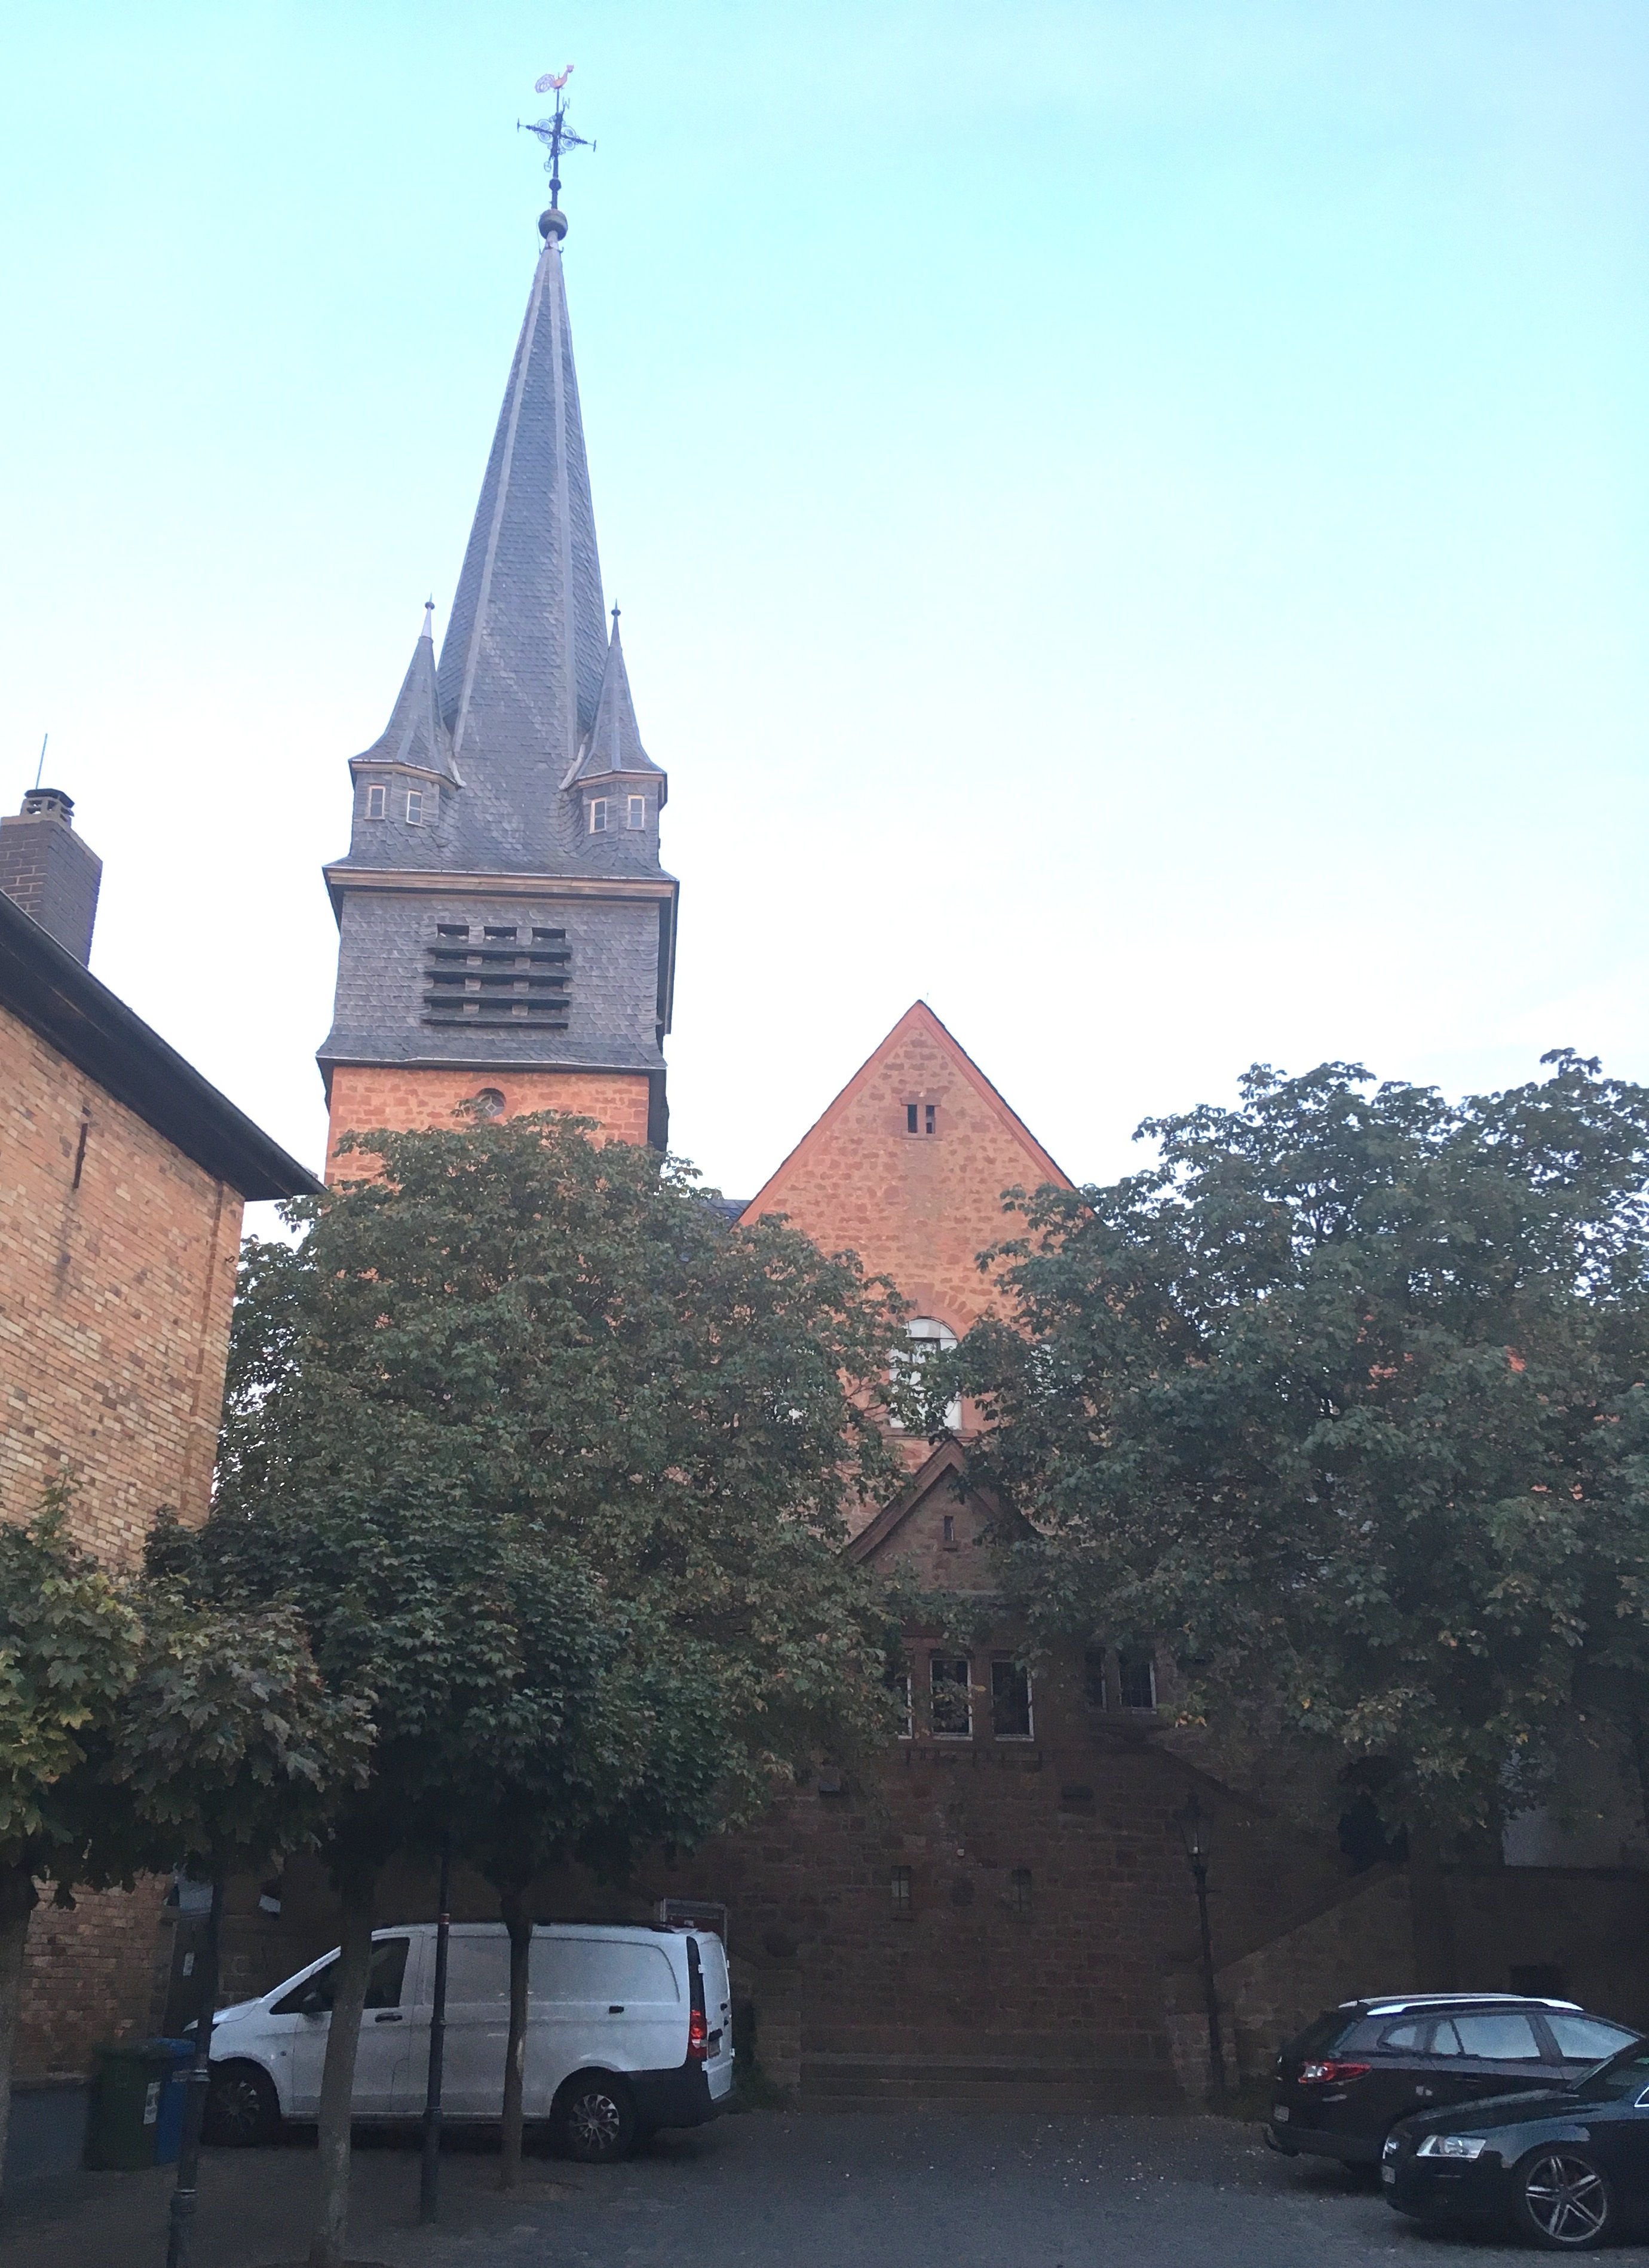 Die Kirche aus dem frühen 20. Jahrhundert liegt im Ortskern von Nieder-Klingen. Zwei Treppenaufgänge führen zum Eingang. Die reformiert geprägte Kirche besticht durch farbige, freundliche Innengestaltung.